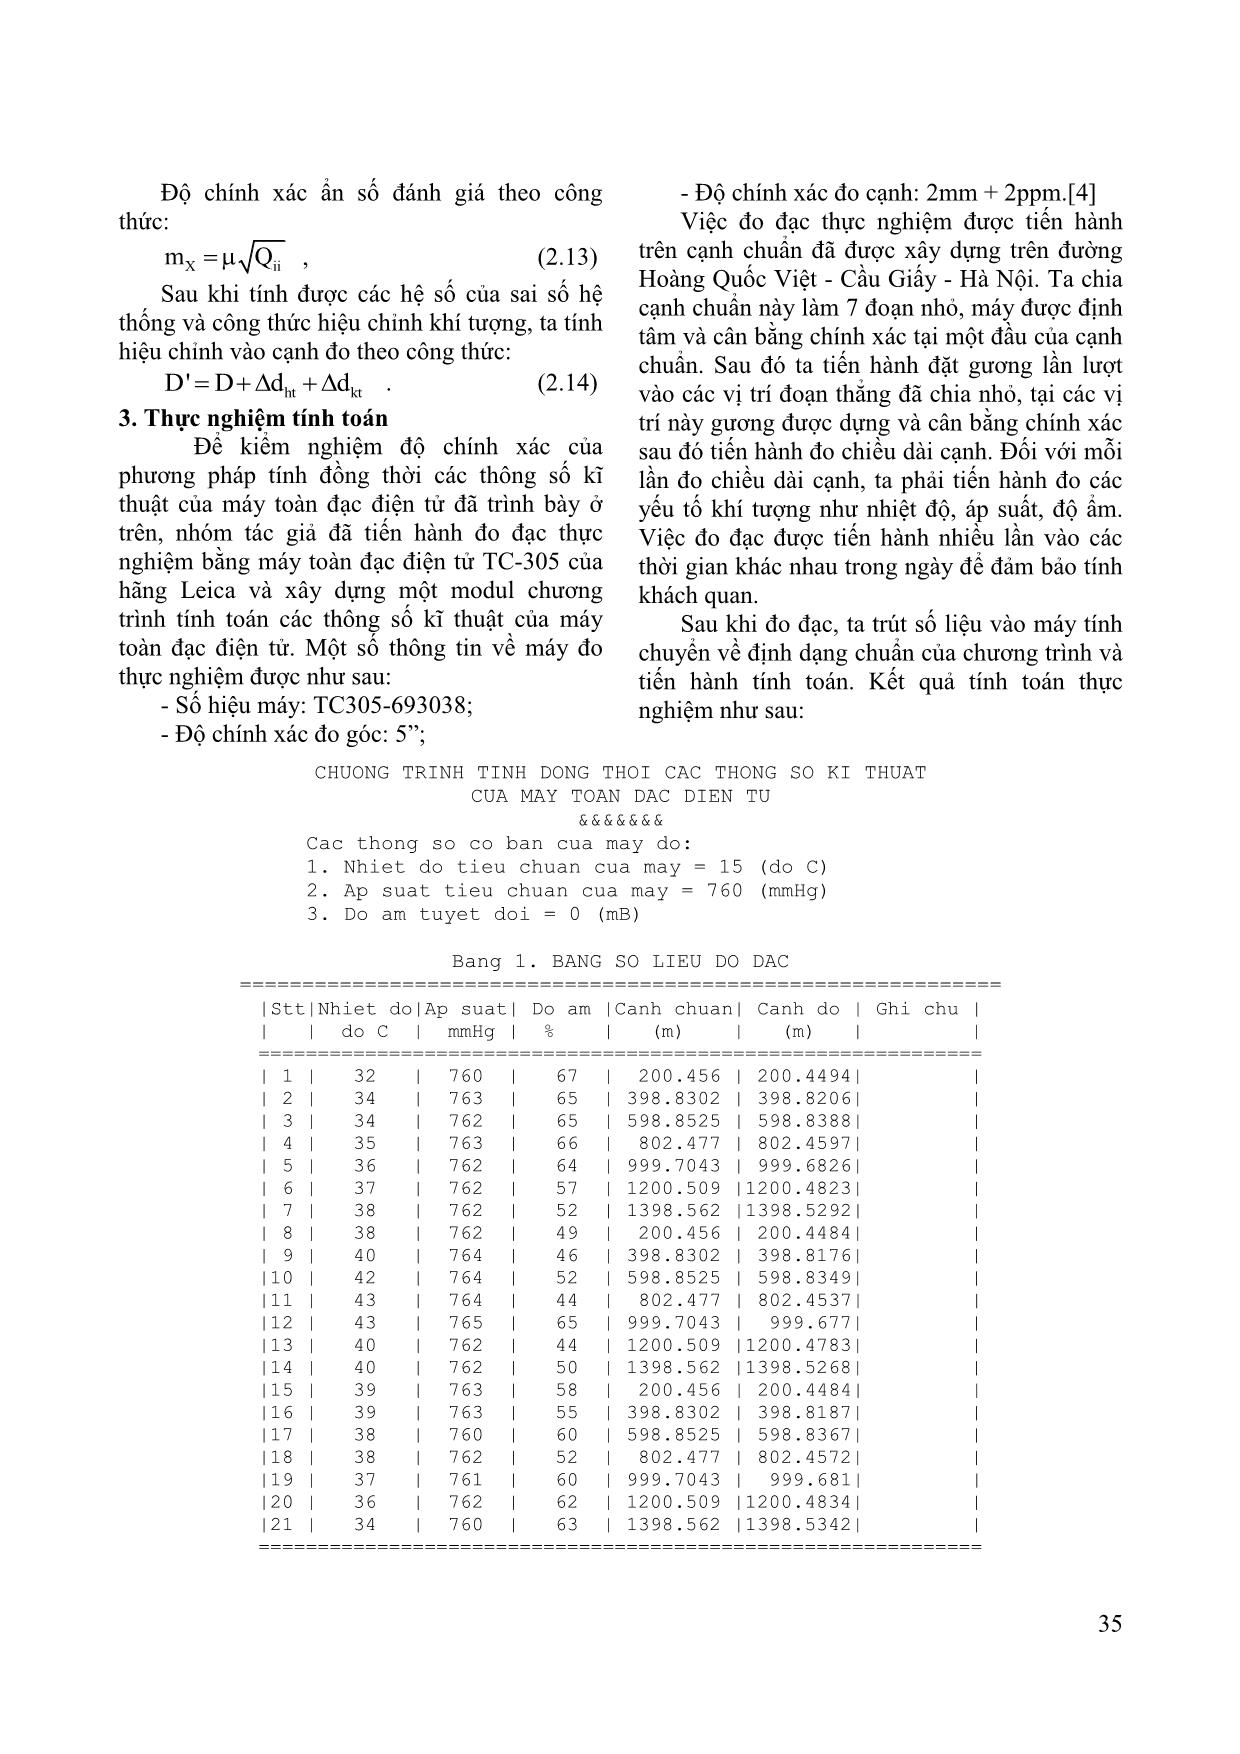 Phương pháp xác định đồng thời các thông số hiệu chỉnh của máy toàn đạc điện tử trong điều kiện Việt Nam trang 3